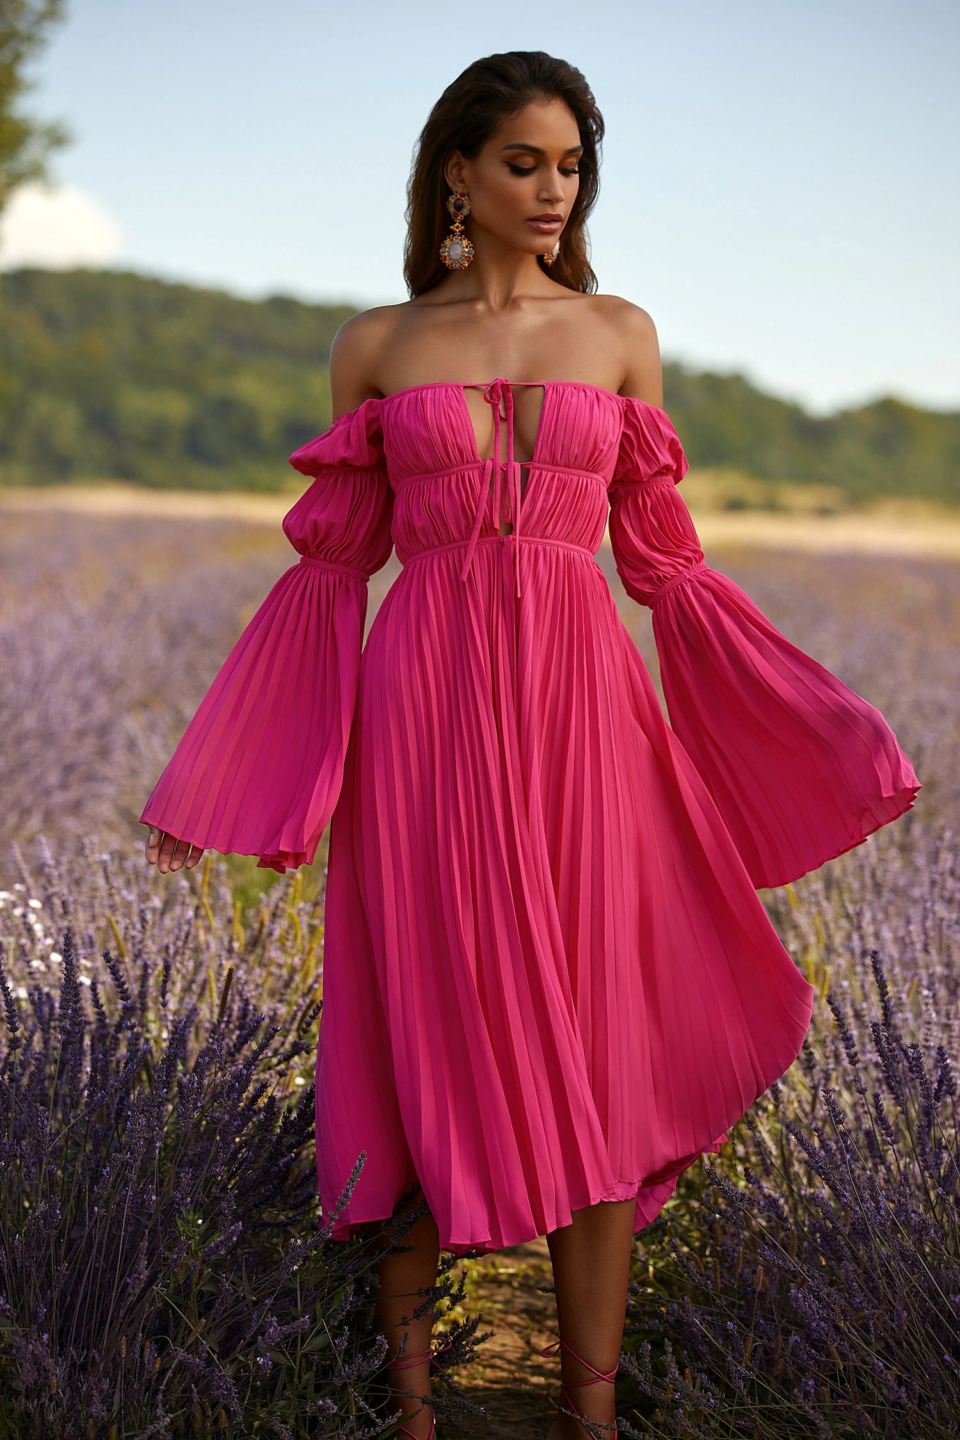 pink floaty boho dress worn by model in a lavender field